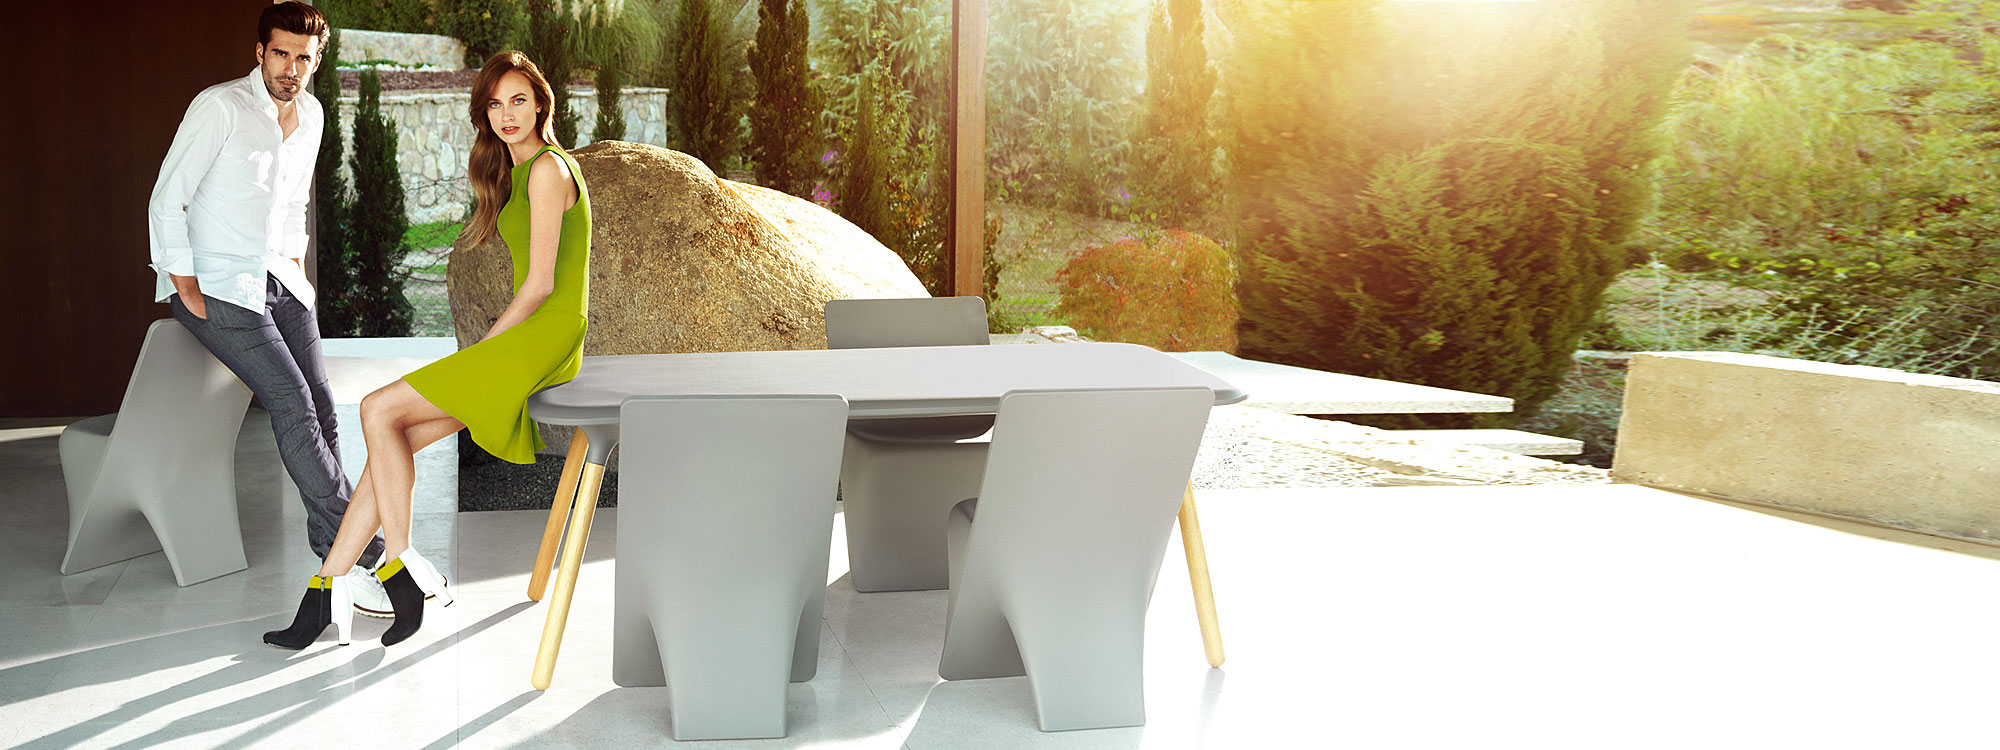 Light Grey Sloo MODERN Outdoor DINING SET. DESIGNER Garden Dining Furniture In HIGH QUALITY Garden Furniture MATERIALS By VONDOM LUXURY Plastic FURNITURE.